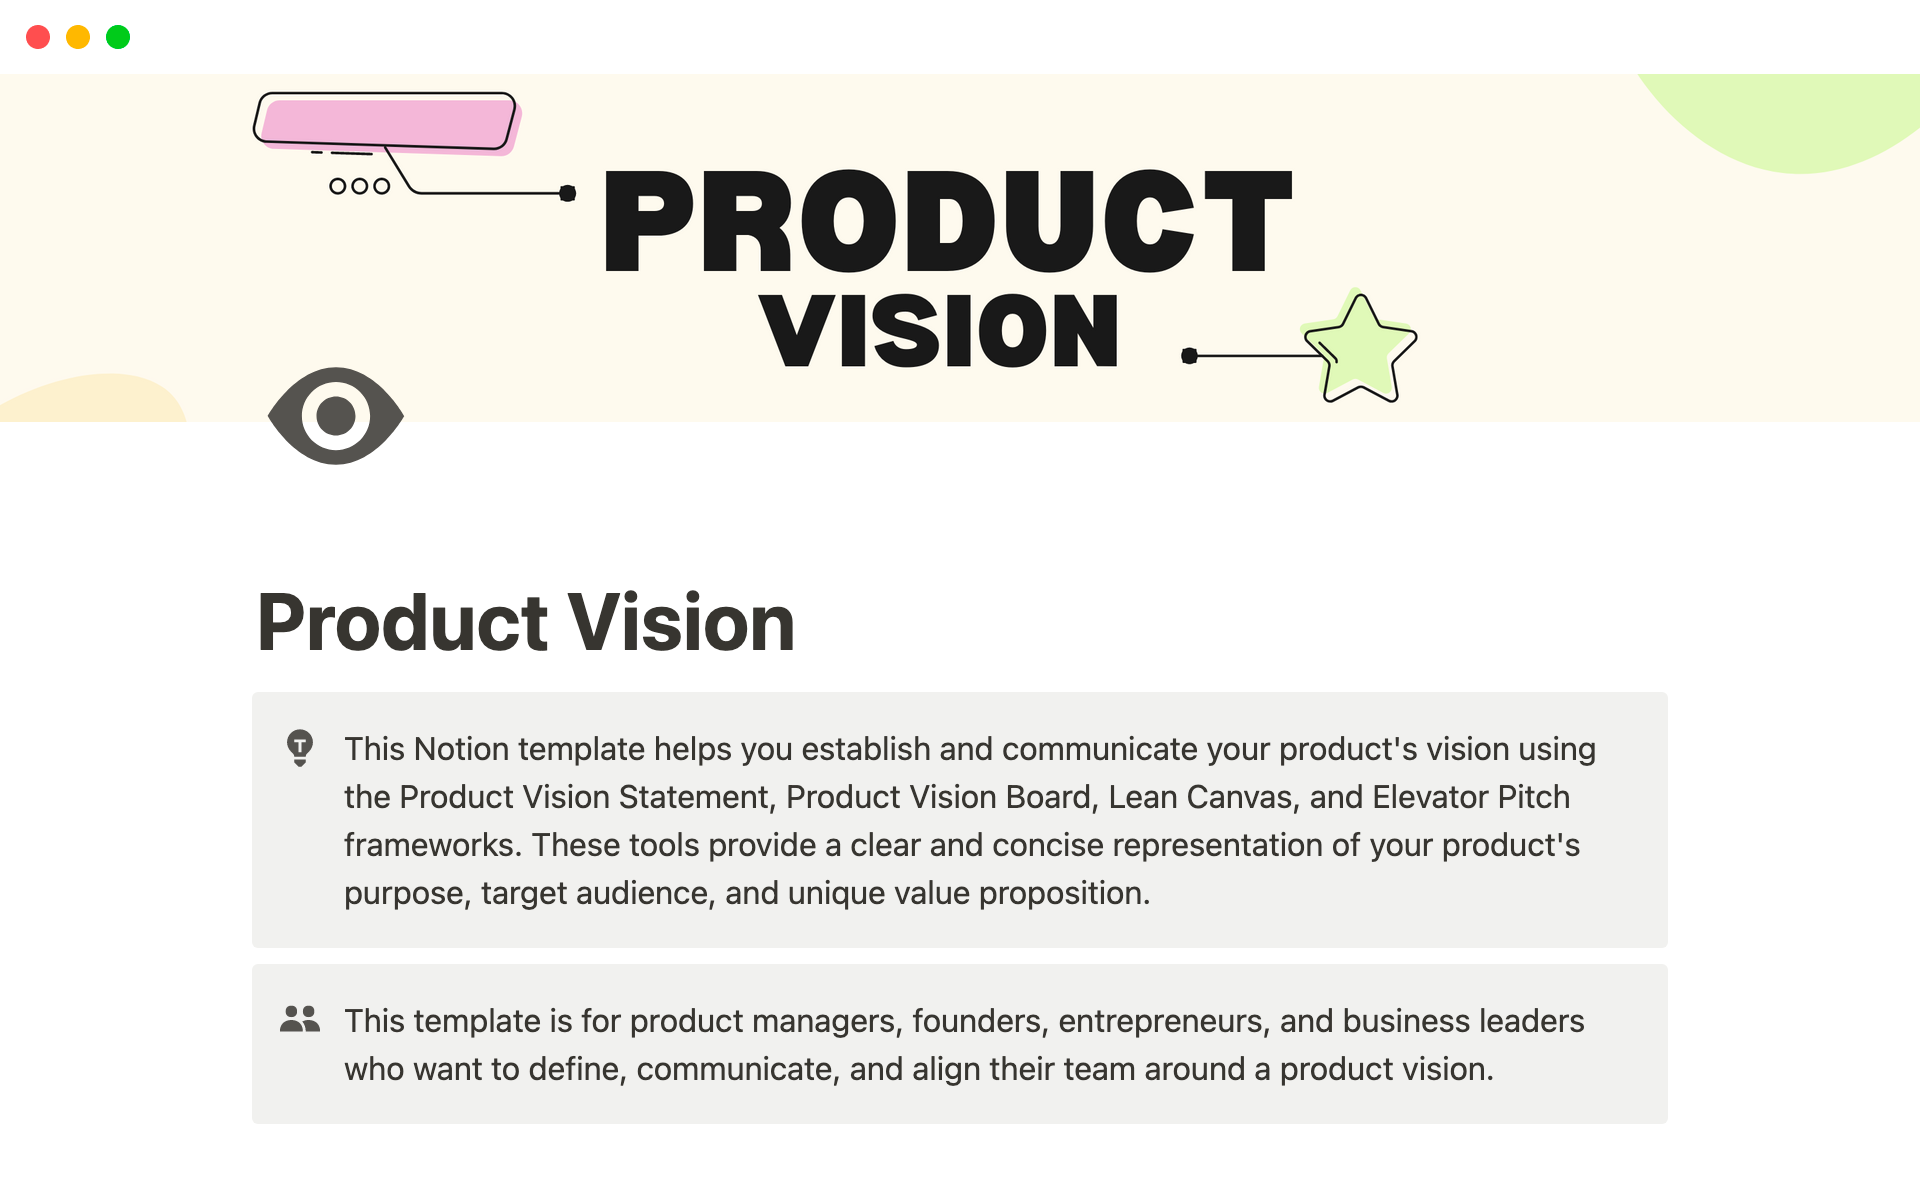 Uma prévia do modelo para Product Vision